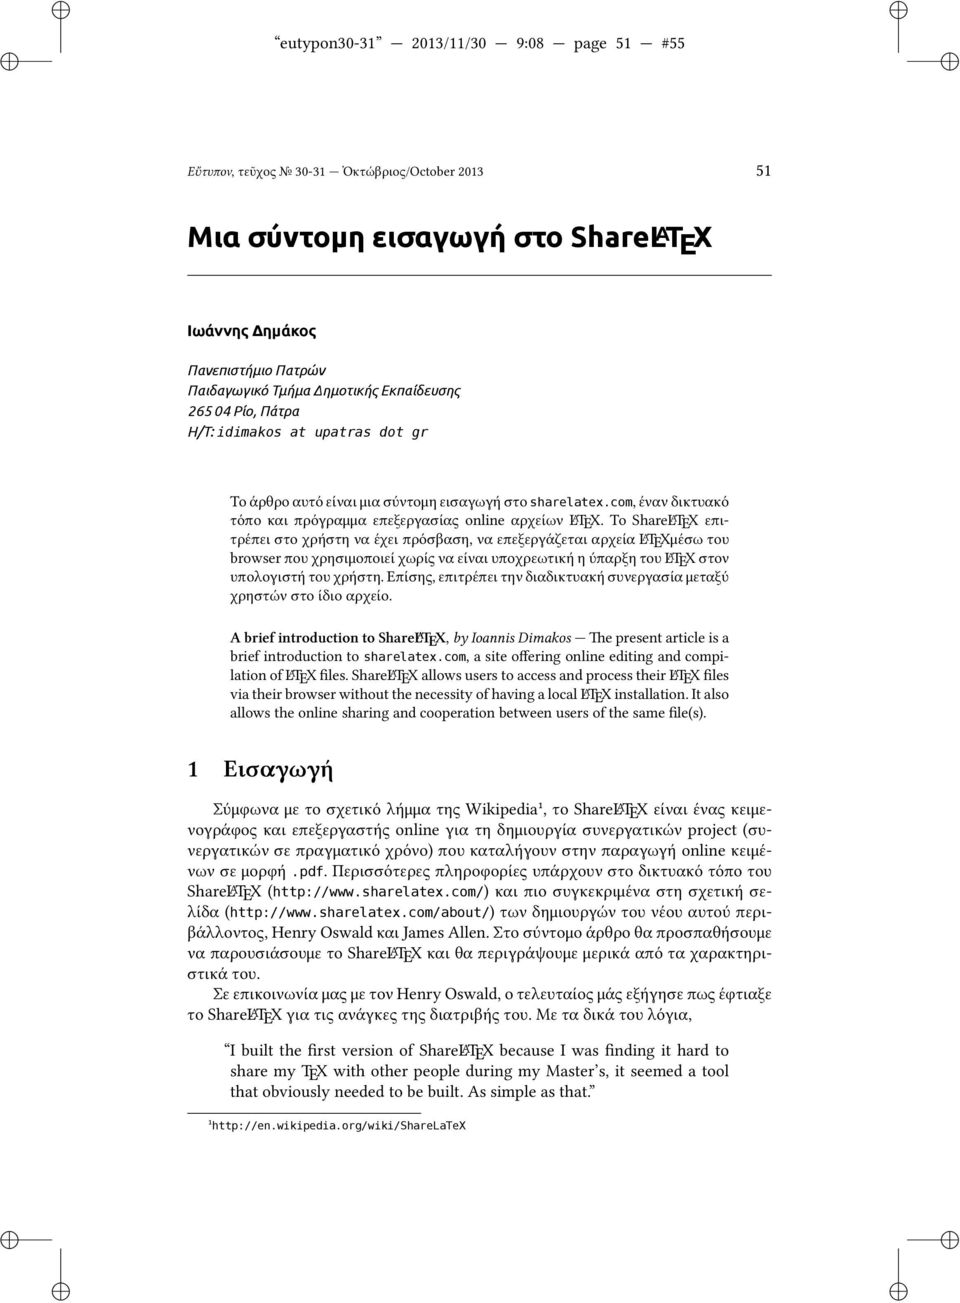 Το ShareL A TEX επιτρέπει στο χρήστη να έχει πρόσβαση, να επεξεργάζεται αρχεία L A TEXμέσω του browser που χρησιμοποιεί χωρίς να είναι υποχρεωτική η ύπαρξη του L A TEX στον υπολογιστή του χρήστη.